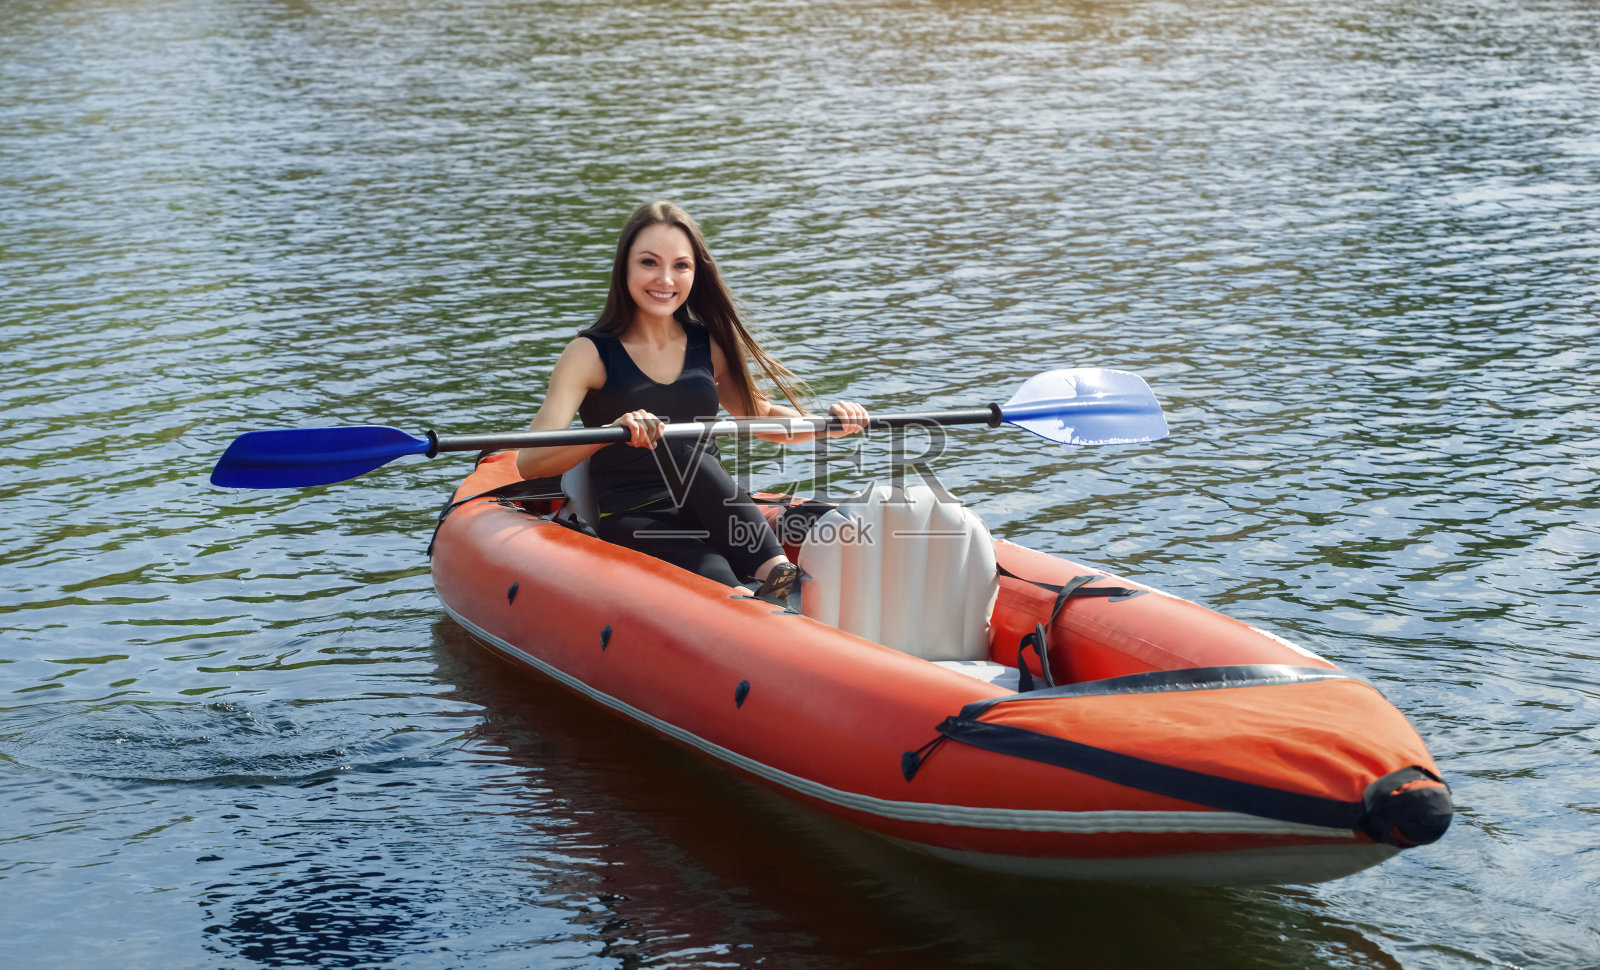 那个微笑着的女孩——一个长头发的女运动员，穿着黑色运动服，在一个温暖的夏日阳光明媚的日子里，在湖上的红色充气独木舟上划着桨照片摄影图片